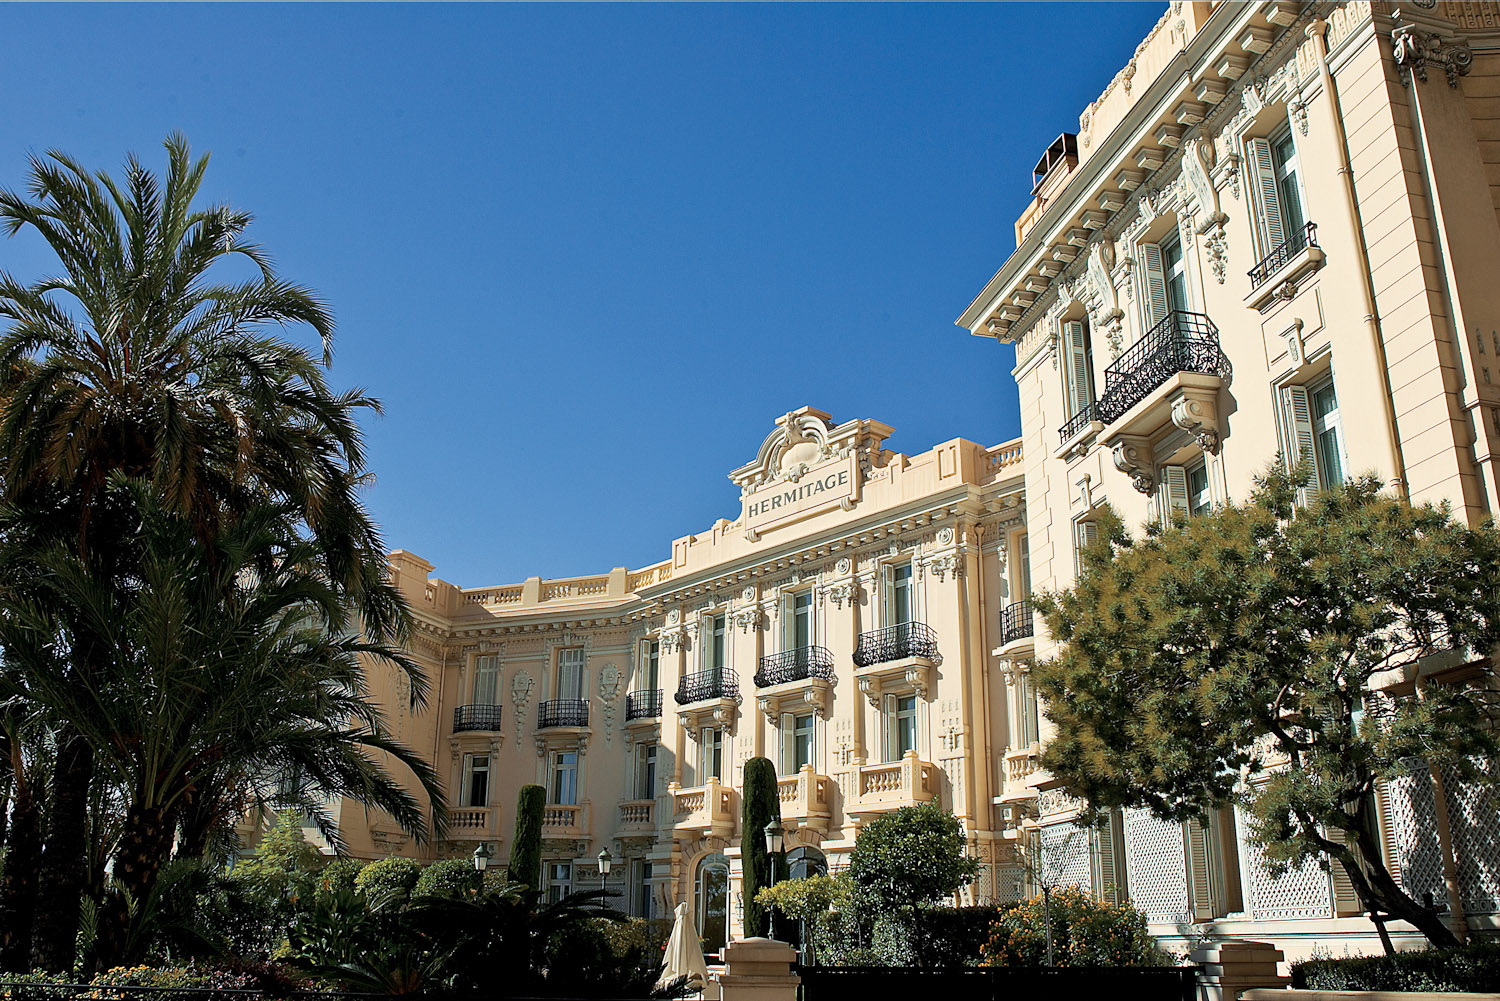 Hotel Hermitage, Monaco.